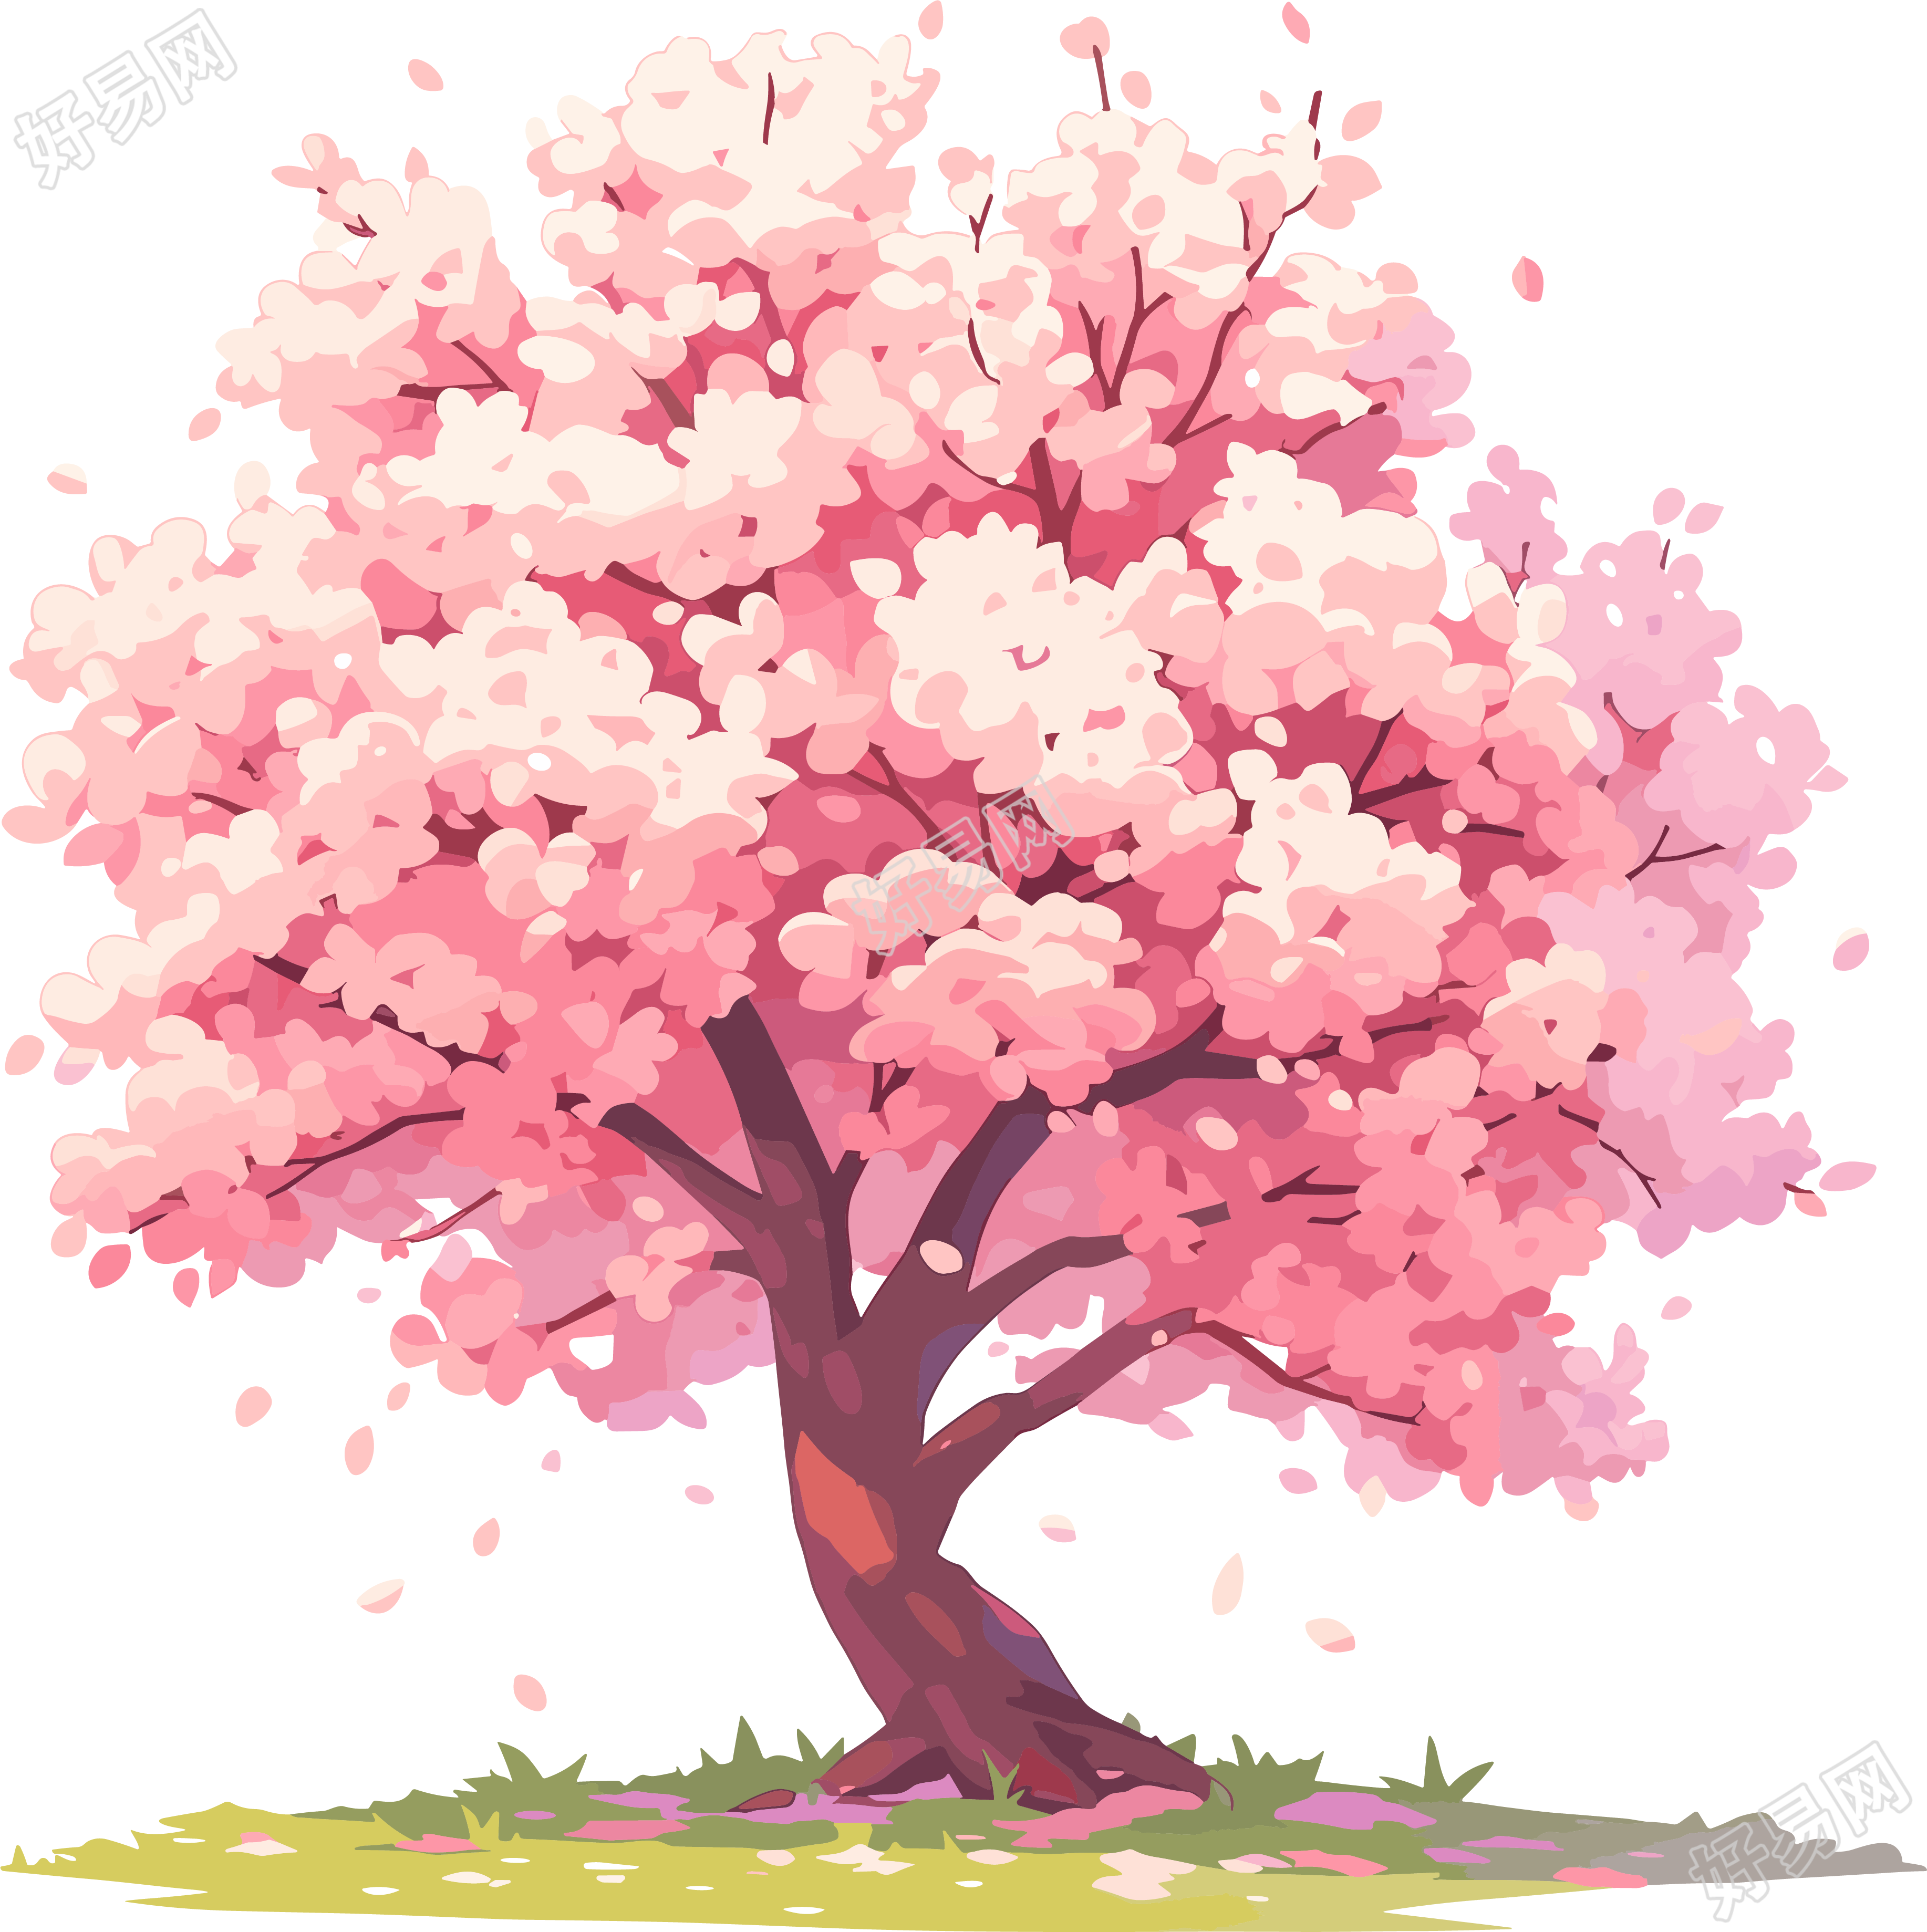 樱花树插画素材